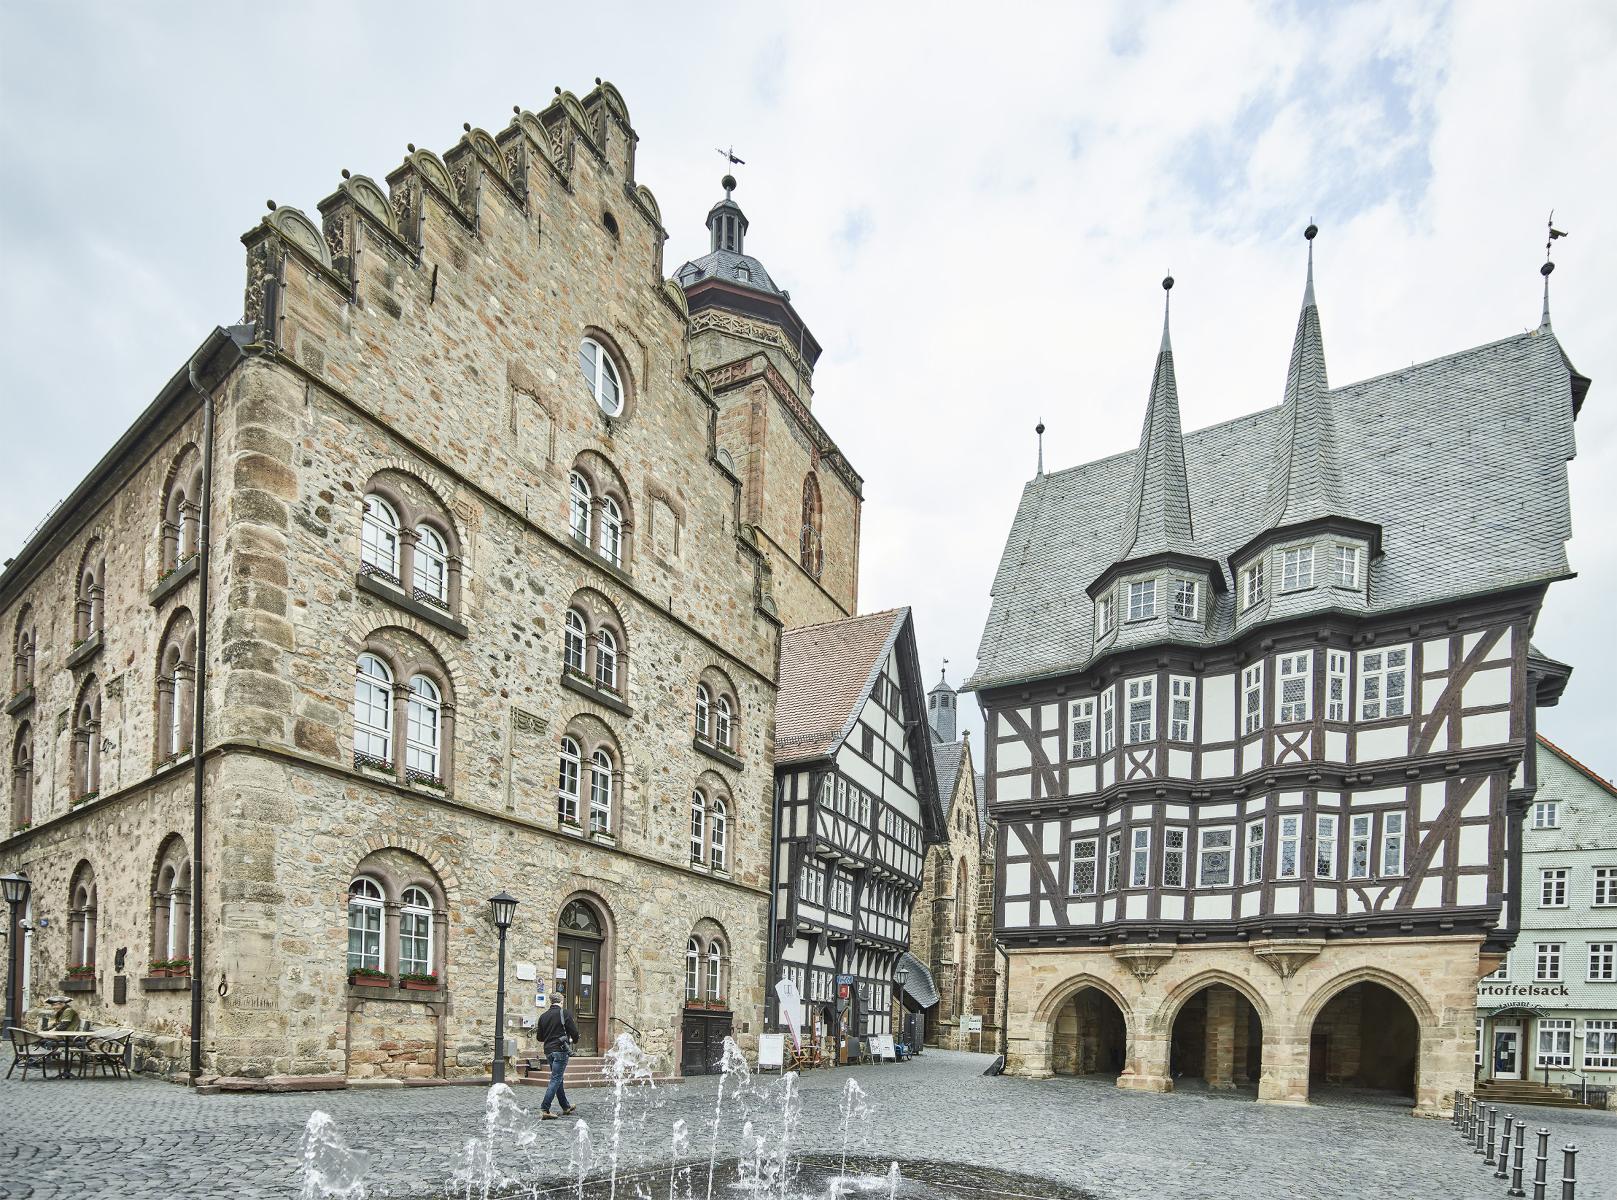 Über 400 Fachwerkhäuser aus sieben Jahrhunderten dominieren das Altstadtbild einer der schönsten Kleinstädte Deutschlands. Idyllische Plätze und verwinkelte Gassen laden ein zum Entdecken, Verweilen und Erleben. Allen voran der Marktplatz mit d...